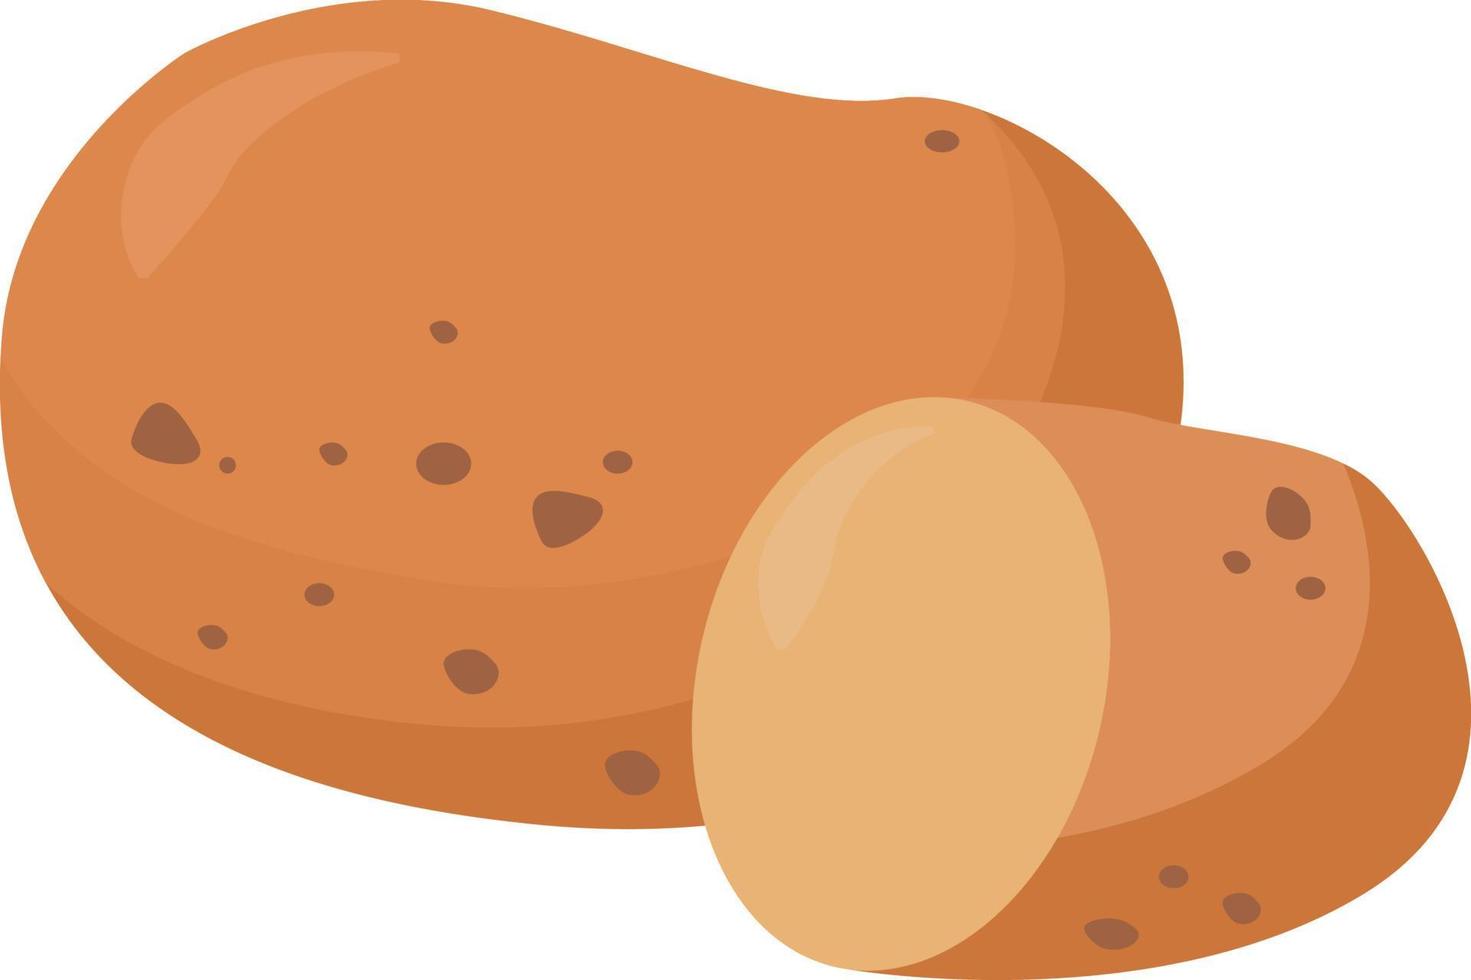 grosses pommes de terre, illustration, vecteur sur fond blanc